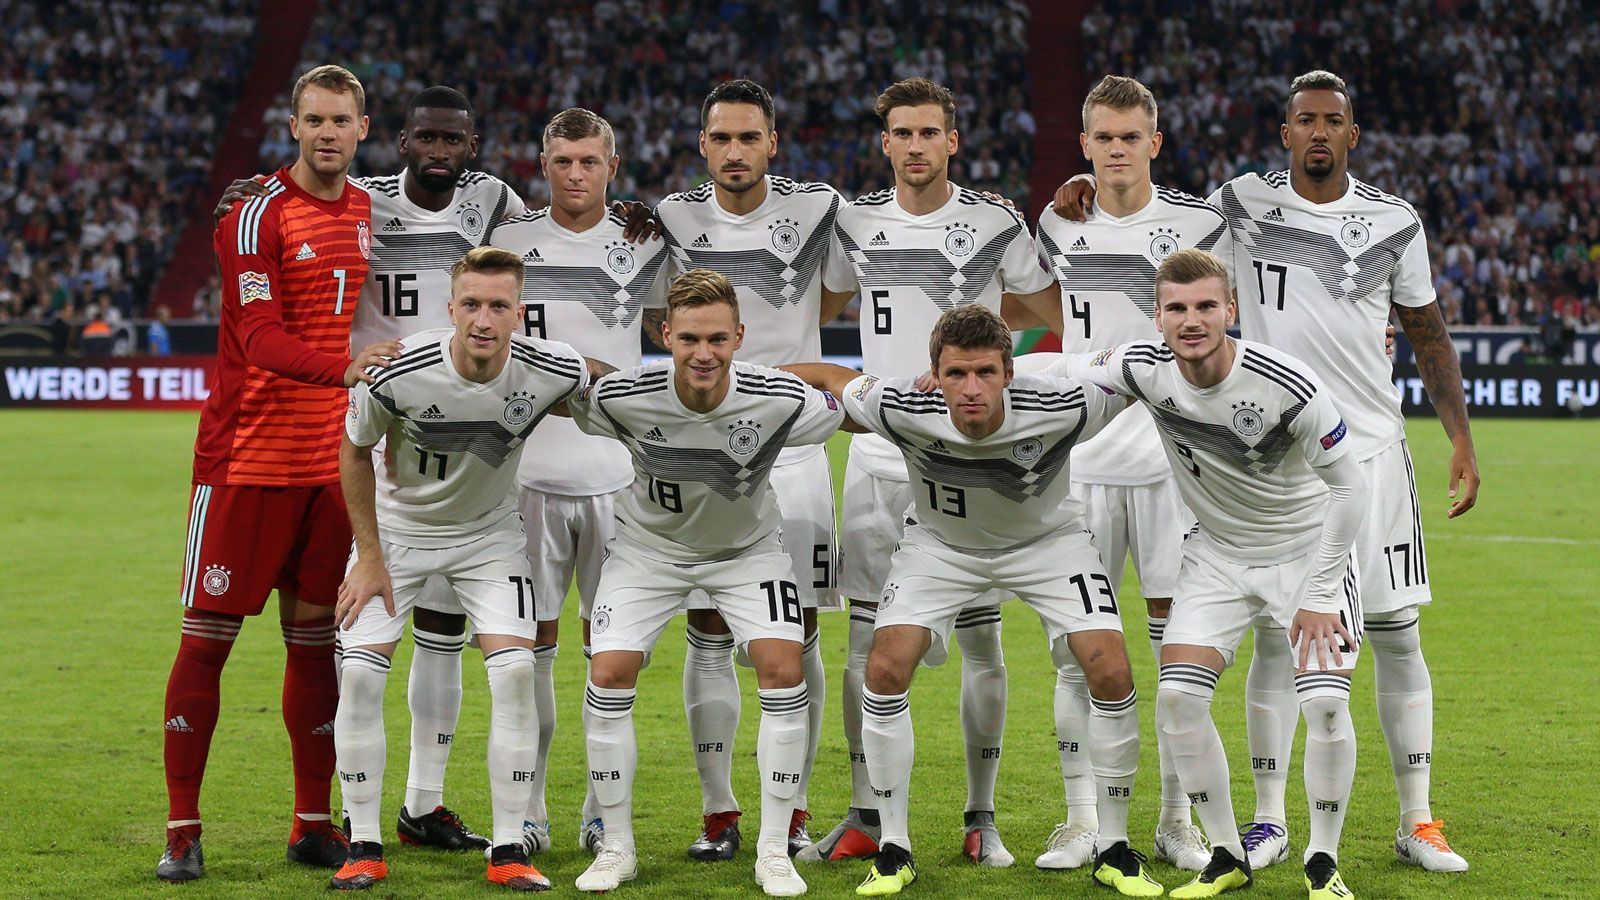 
                <strong>Nations League: Die DFB-Elf gegen Frankreich in der Einzelkritik</strong><br>
                Im ersten Länderspiel nach dem WM-Debakel in Russland traf die DFB-Auswahl im Rahmen der Nations League auf Frankreich. ran.de benotet die deutschen Spieler nach dem 0:0 gegen den Weltmeister.
              